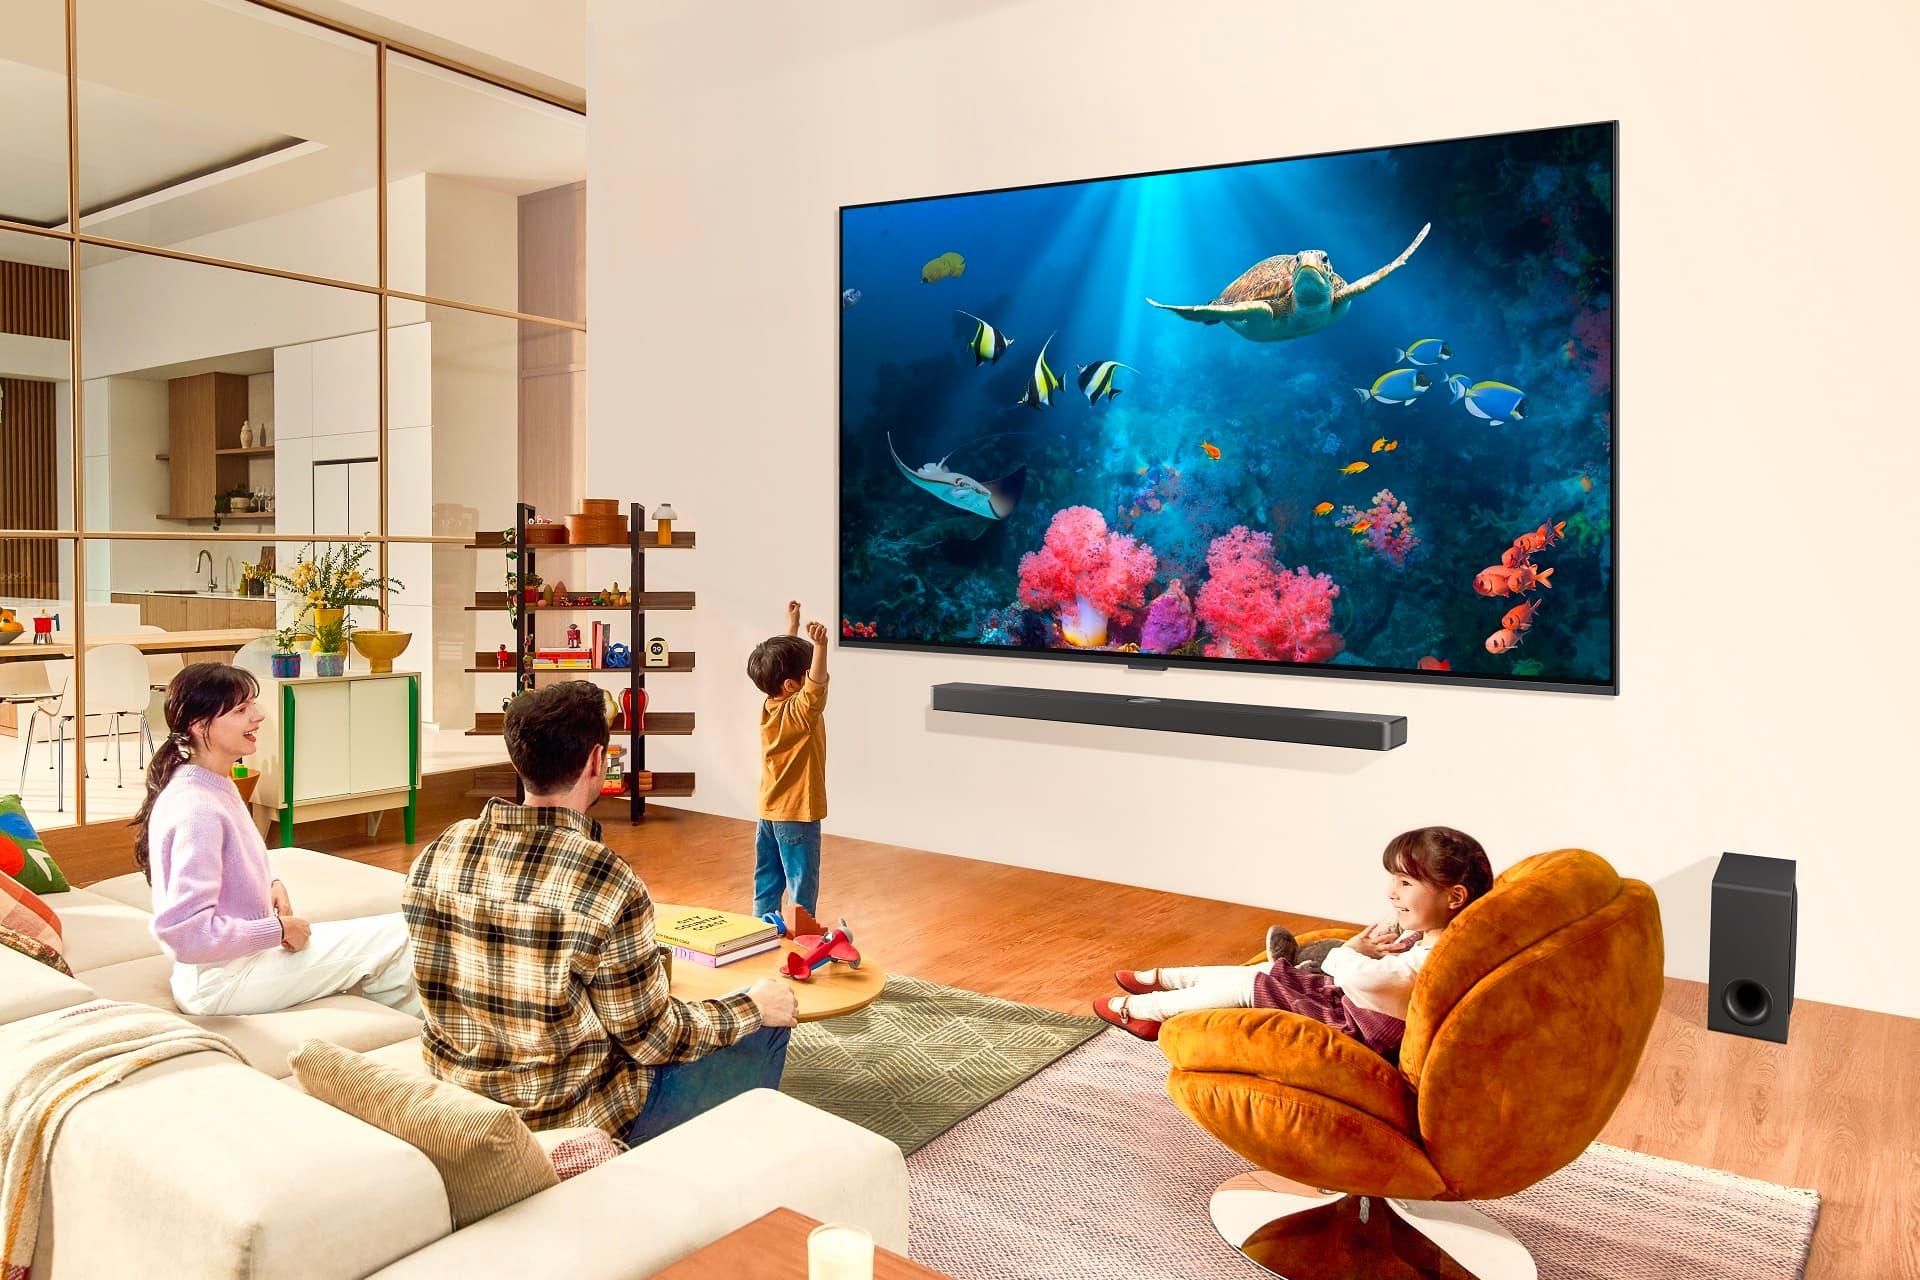 تلویزیون ۹۸ اینچ LG QNED85T ال جی در داخل پذیرایی با اعضای خانواده